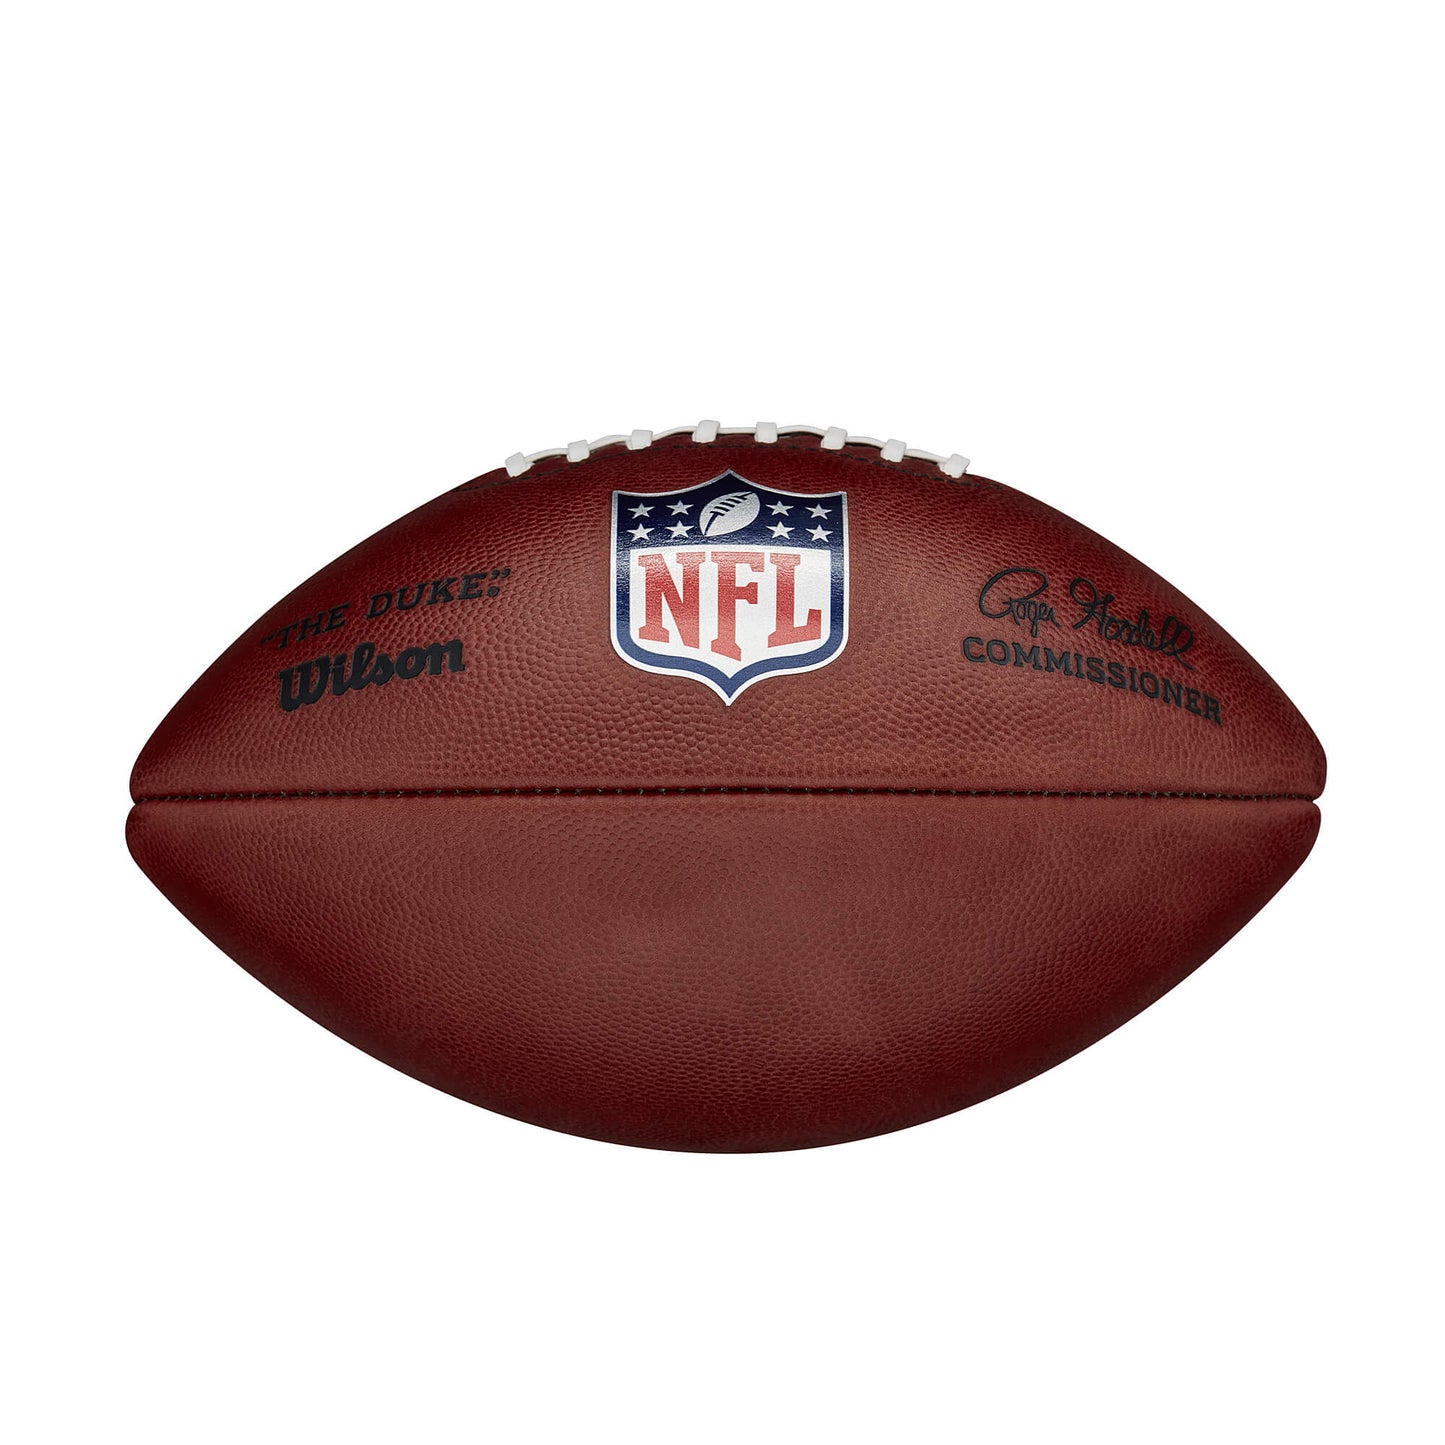 Wilson Official Duke NFL Leather Football